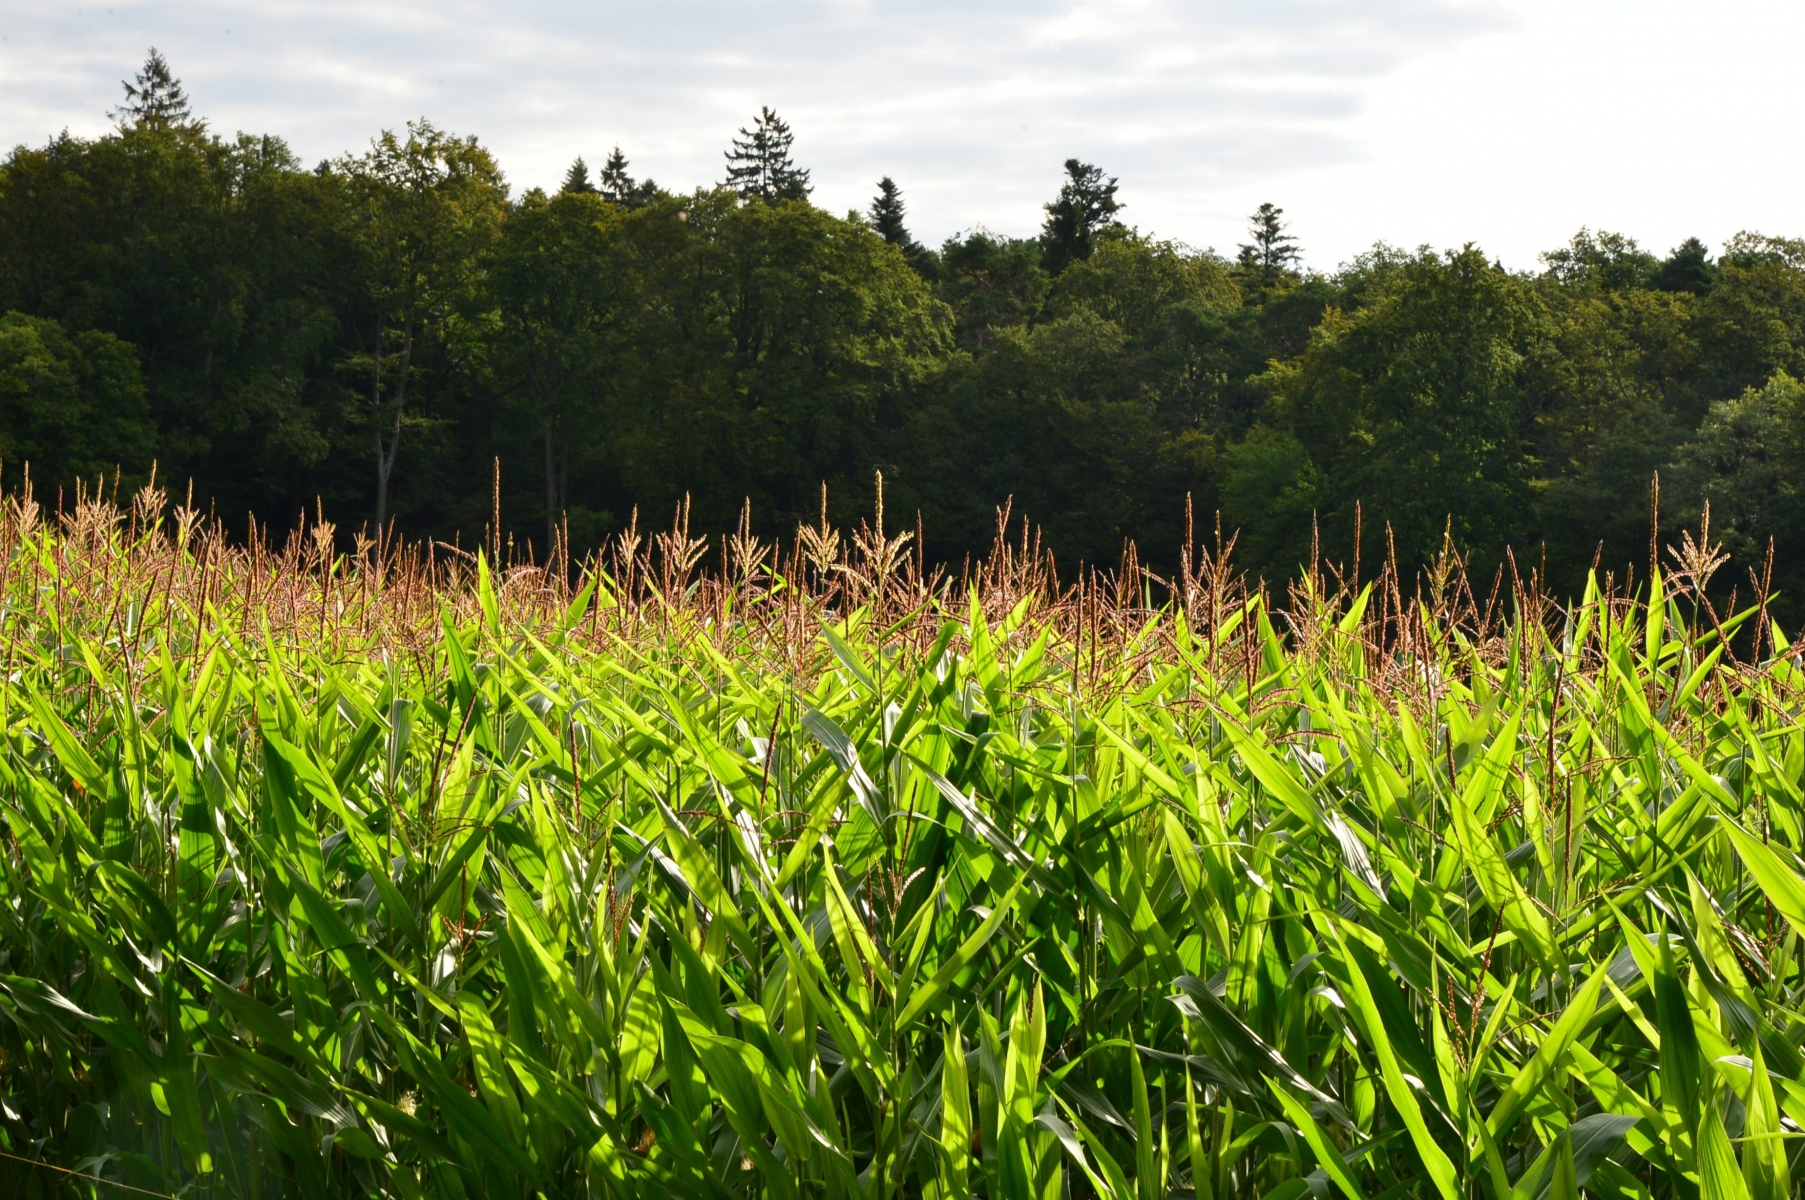 Un champ de maïs à la Beroche    Saint-Aubin, le 22 aout 2014  Photo: Richard Leuenberger